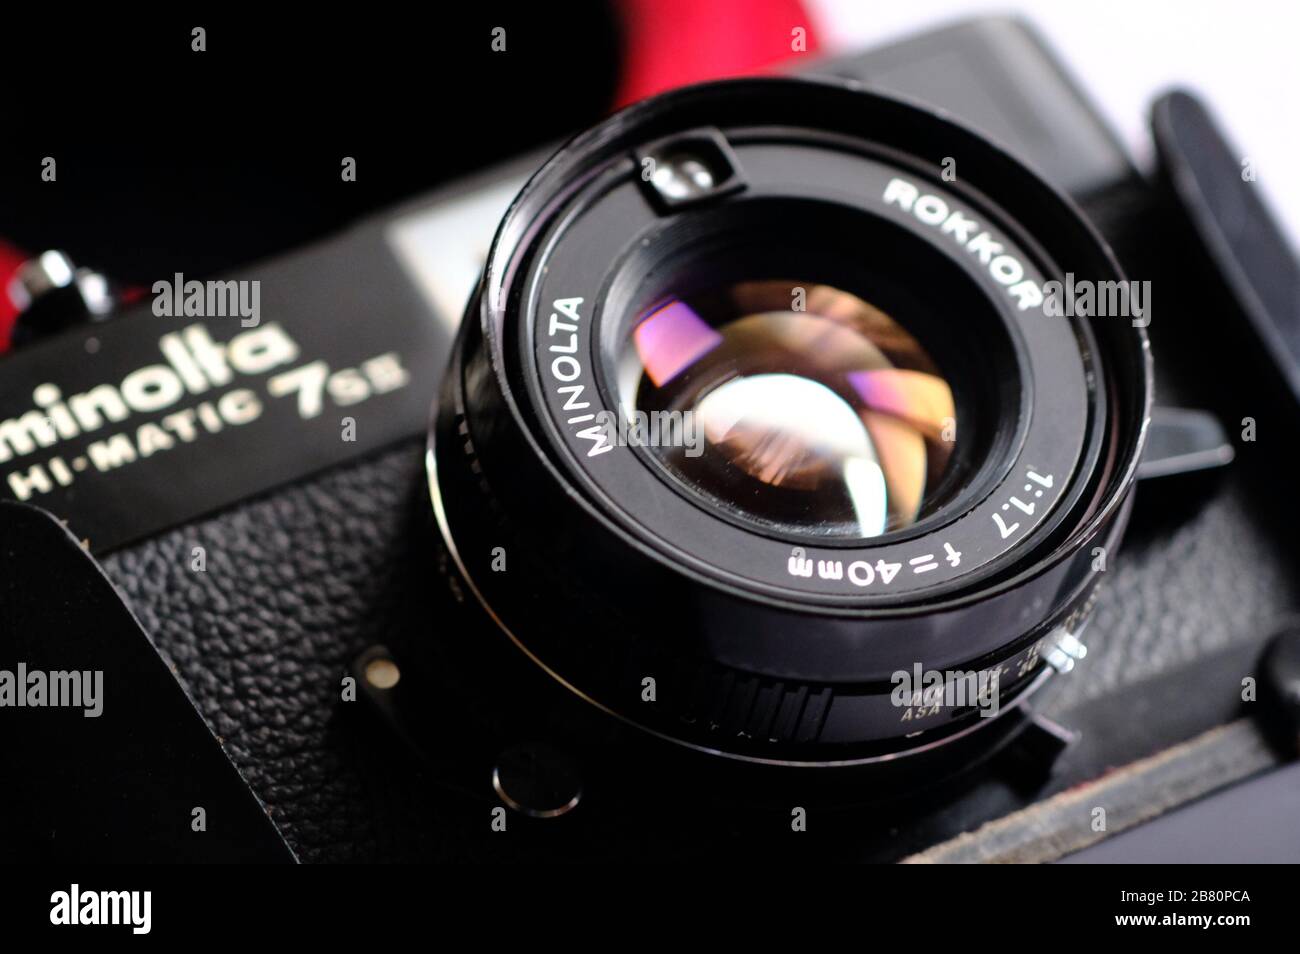 BUCURESTI, RUMANIA - 15 de marzo de 2020: Antigua Minolta Hi-Matic 7s II  negro rangefinder cámara fotográfica y lente y caja Fotografía de stock -  Alamy